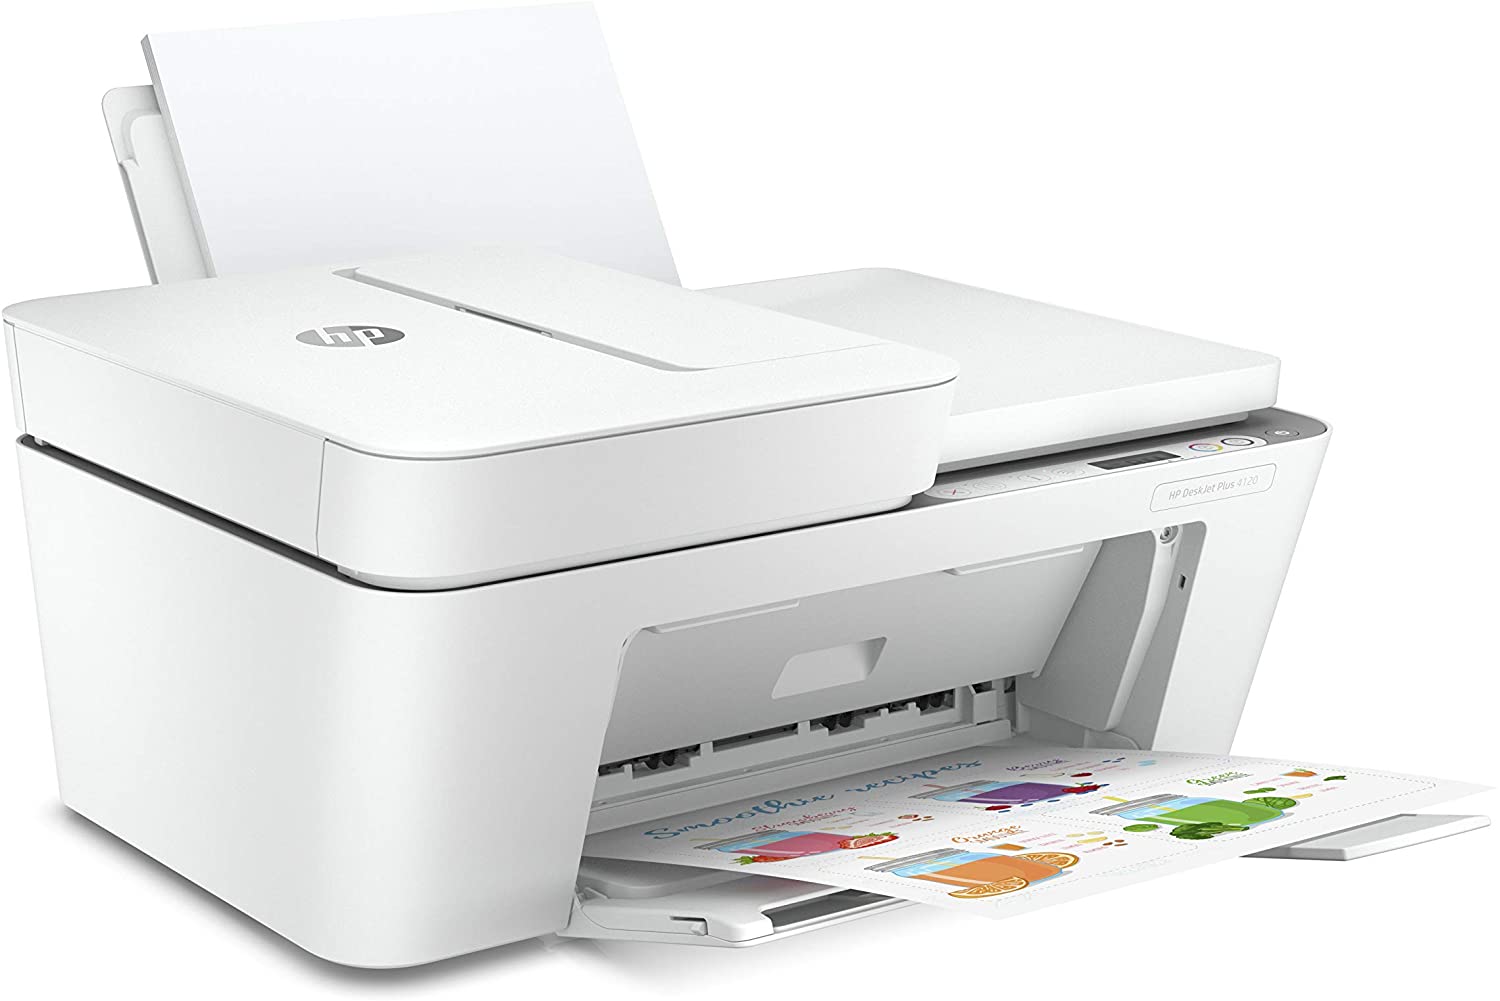 الطابعة المتكاملة HP DeskJet Plus 4120 , الطباعة والنسخ والمسح الضوئي والاتصال اللاسلكي وإرسال الفاكس